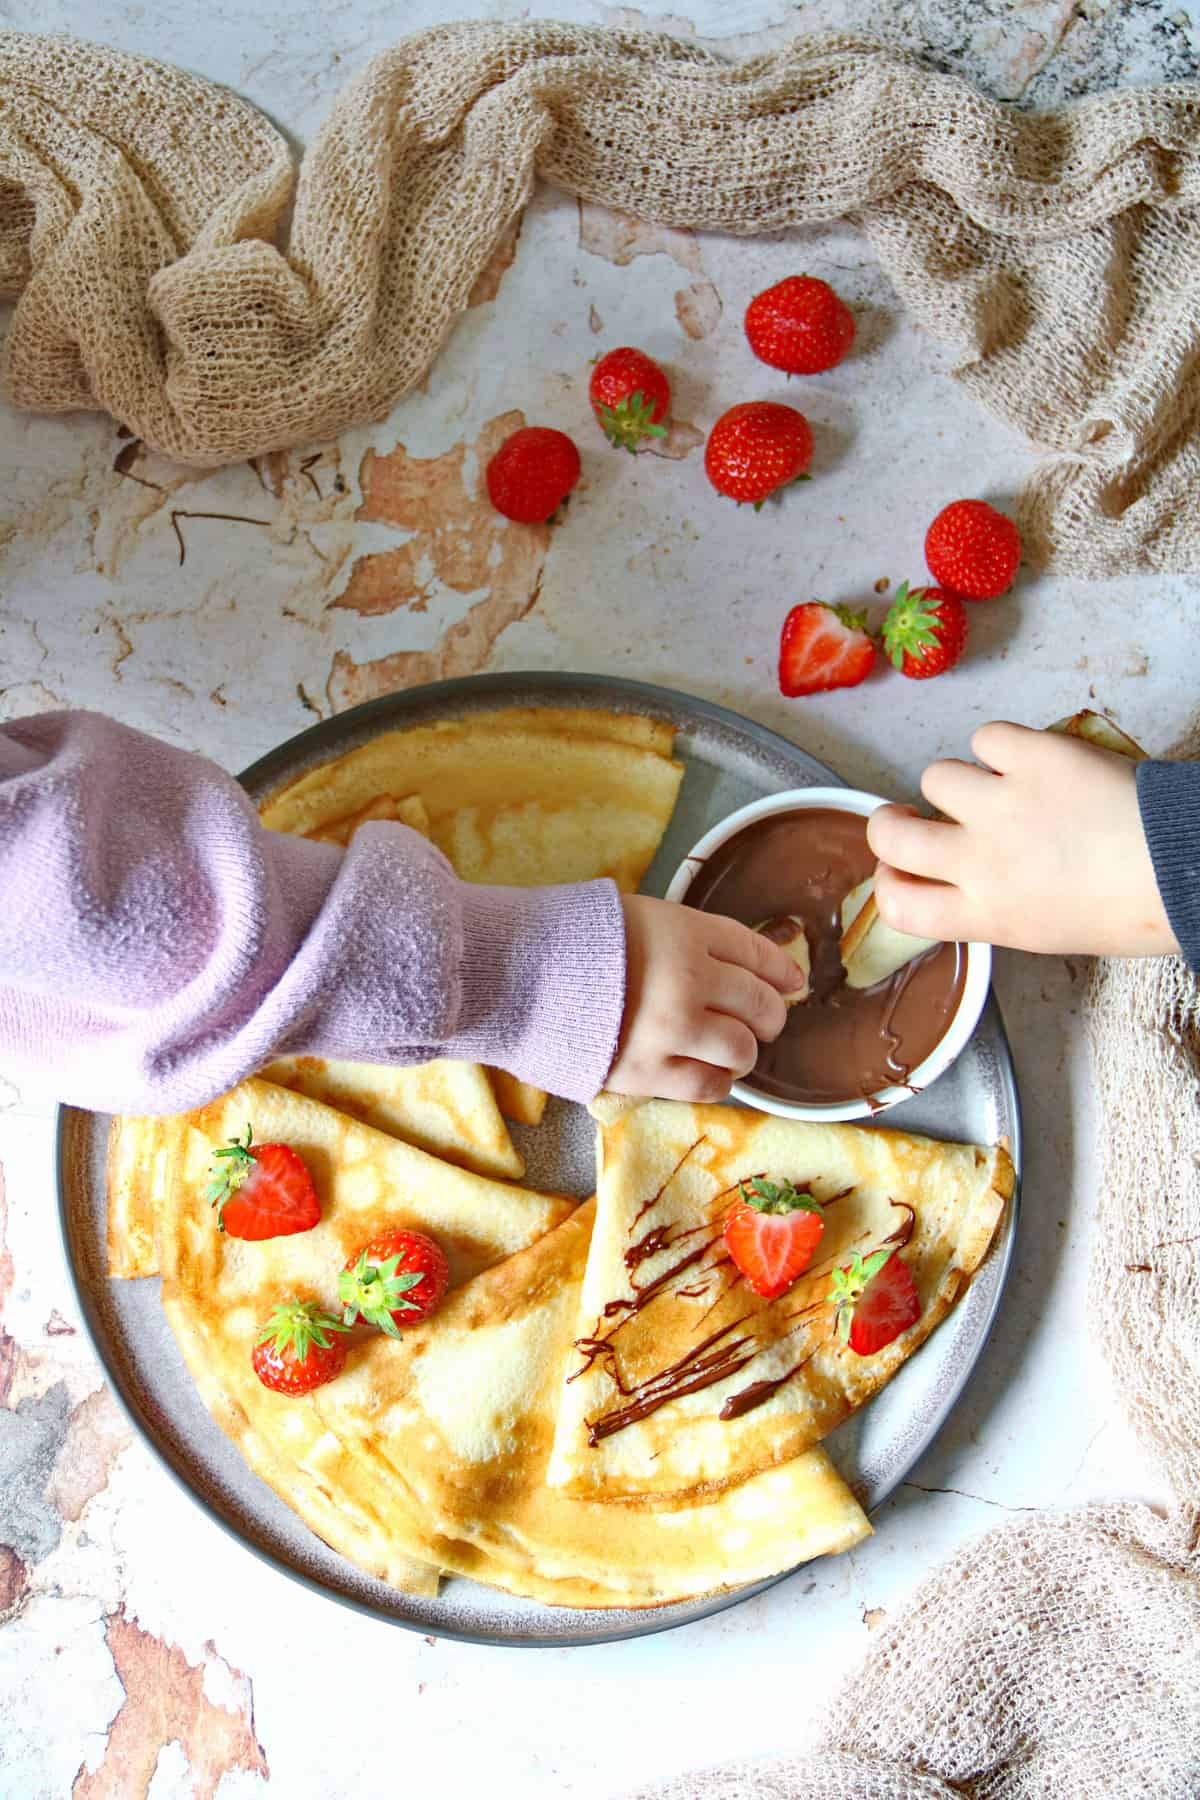 Ein Teller mit Pfannkuchen, Erdbeeren und einem Schälchen mit Nutella. Zwei Kinderhände nehmen mit je einem Stück Pfannkuchen Nutella aus dem Schälchen.